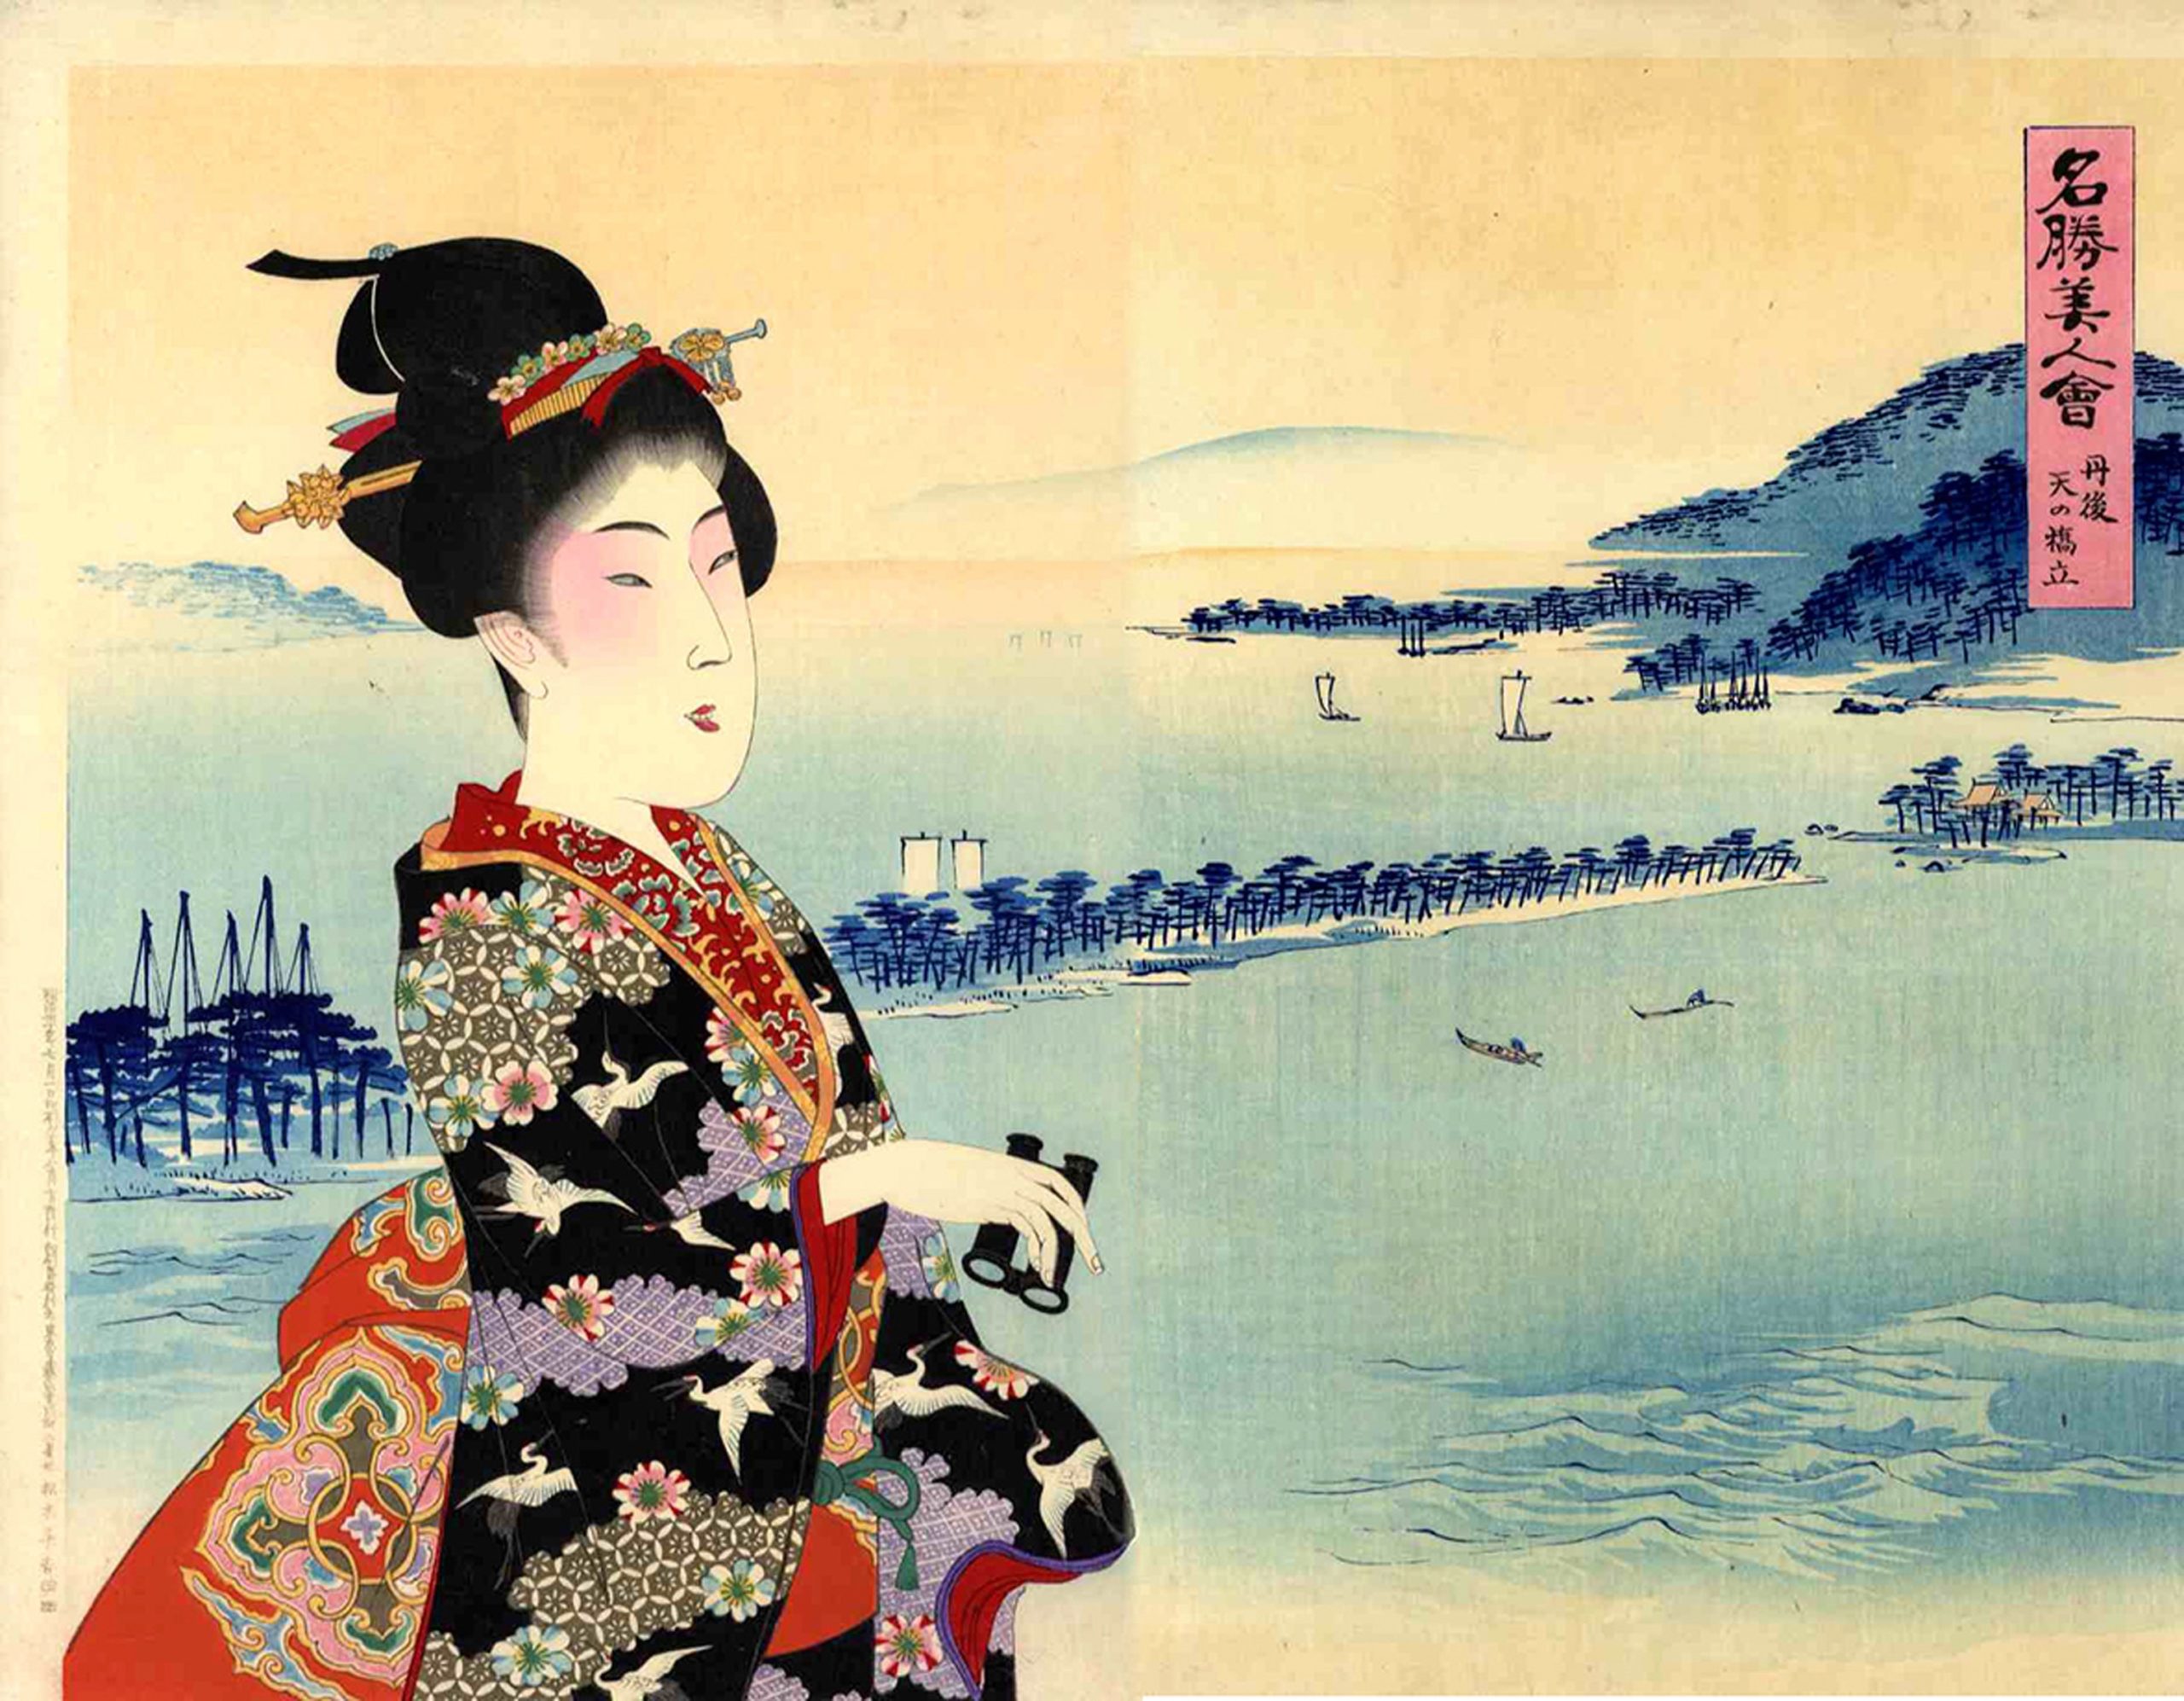 Giappone, storie d’amore e guerra: a Bologna tra samurai e ninja